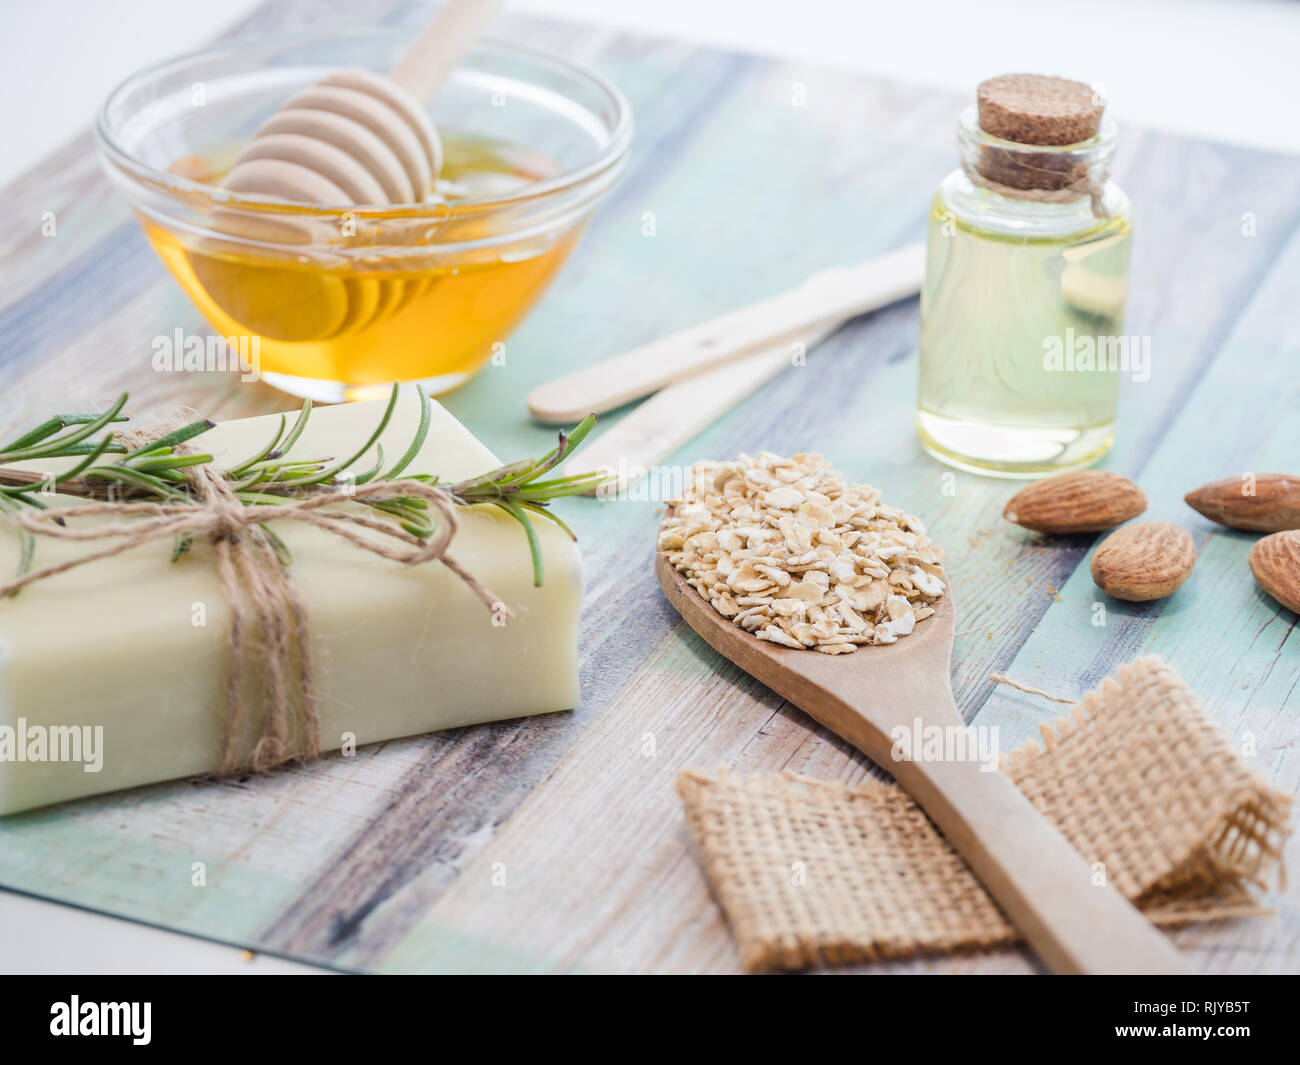 Productos naturales para el cuidado de la piel para máscara corporal  exfoliante ingredientes: Aceite de almendras, miel, jabones naturales,copos  de avena Fotografía de stock - Alamy